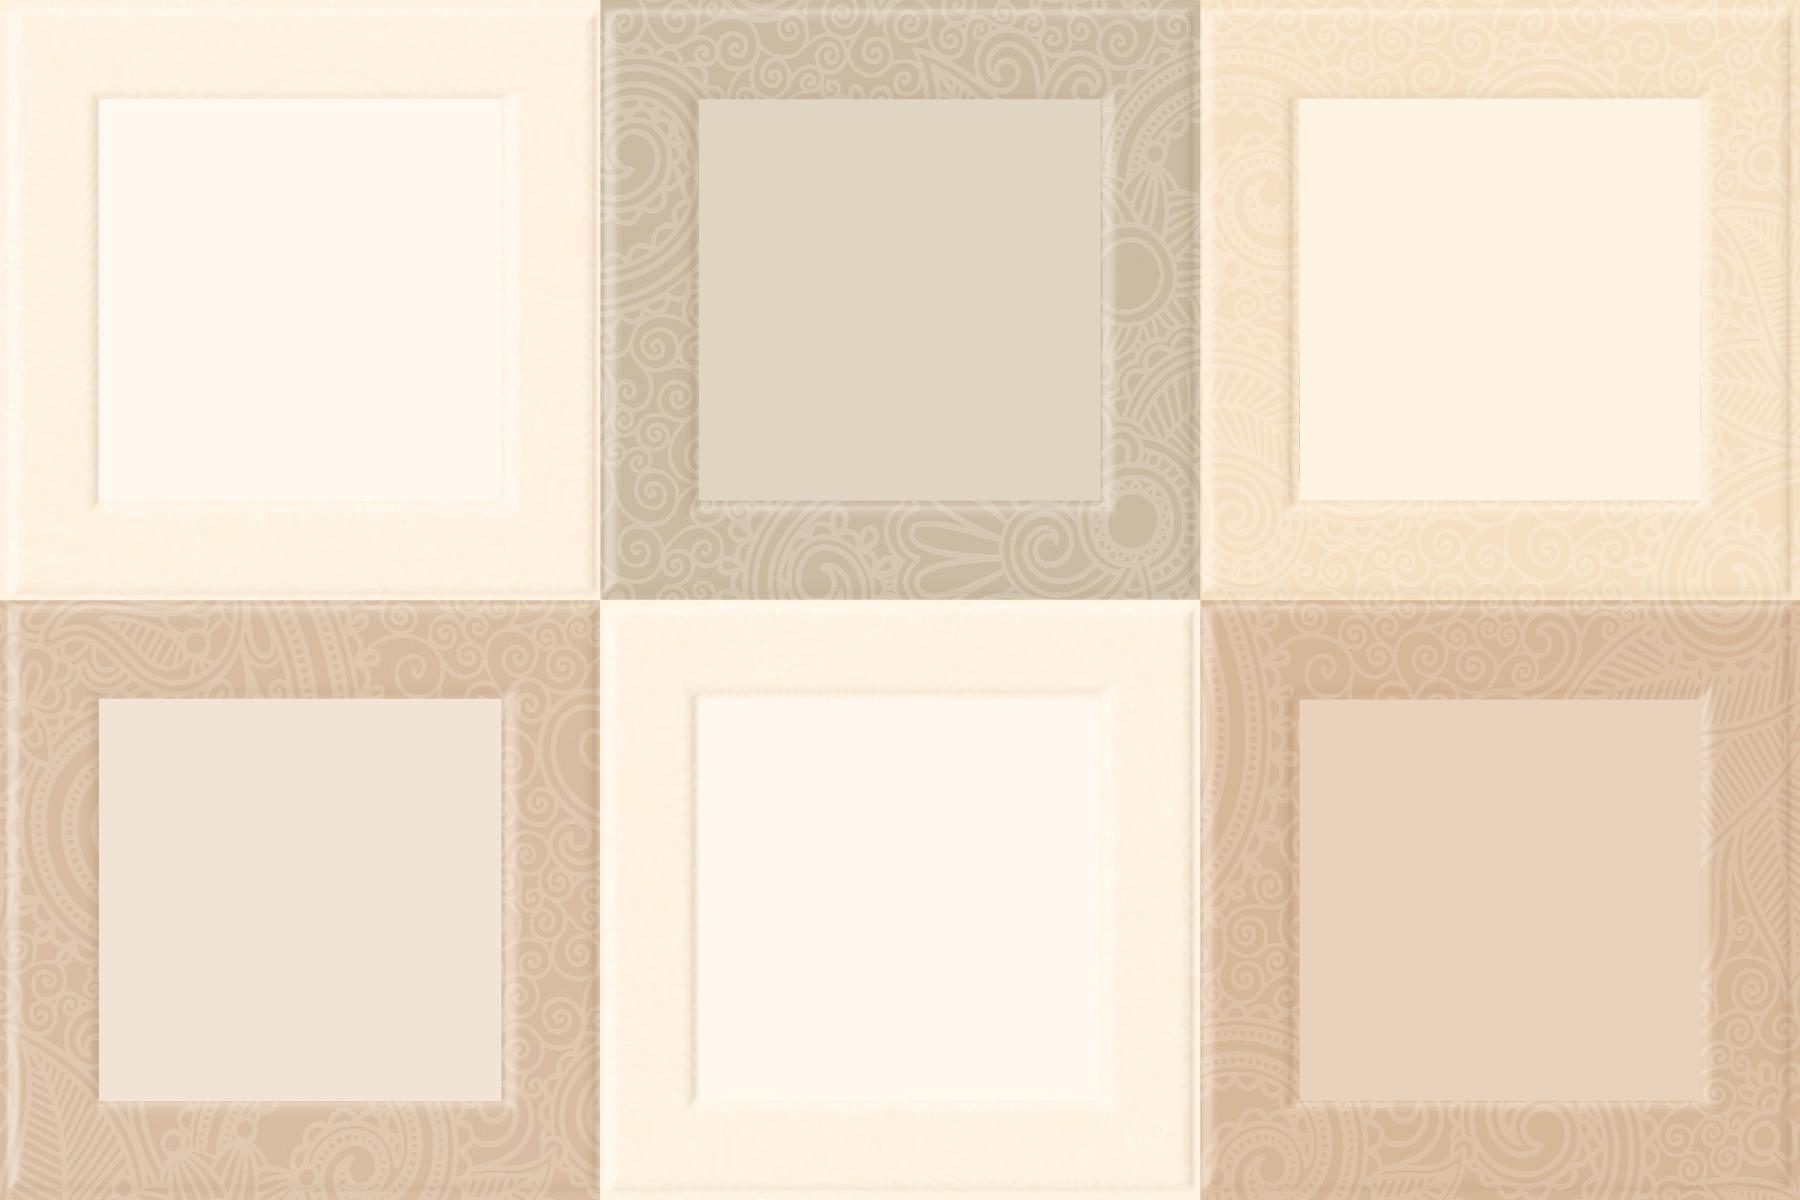 Geometric Tiles for Bathroom Tiles, Kitchen Tiles, Balcony Tiles